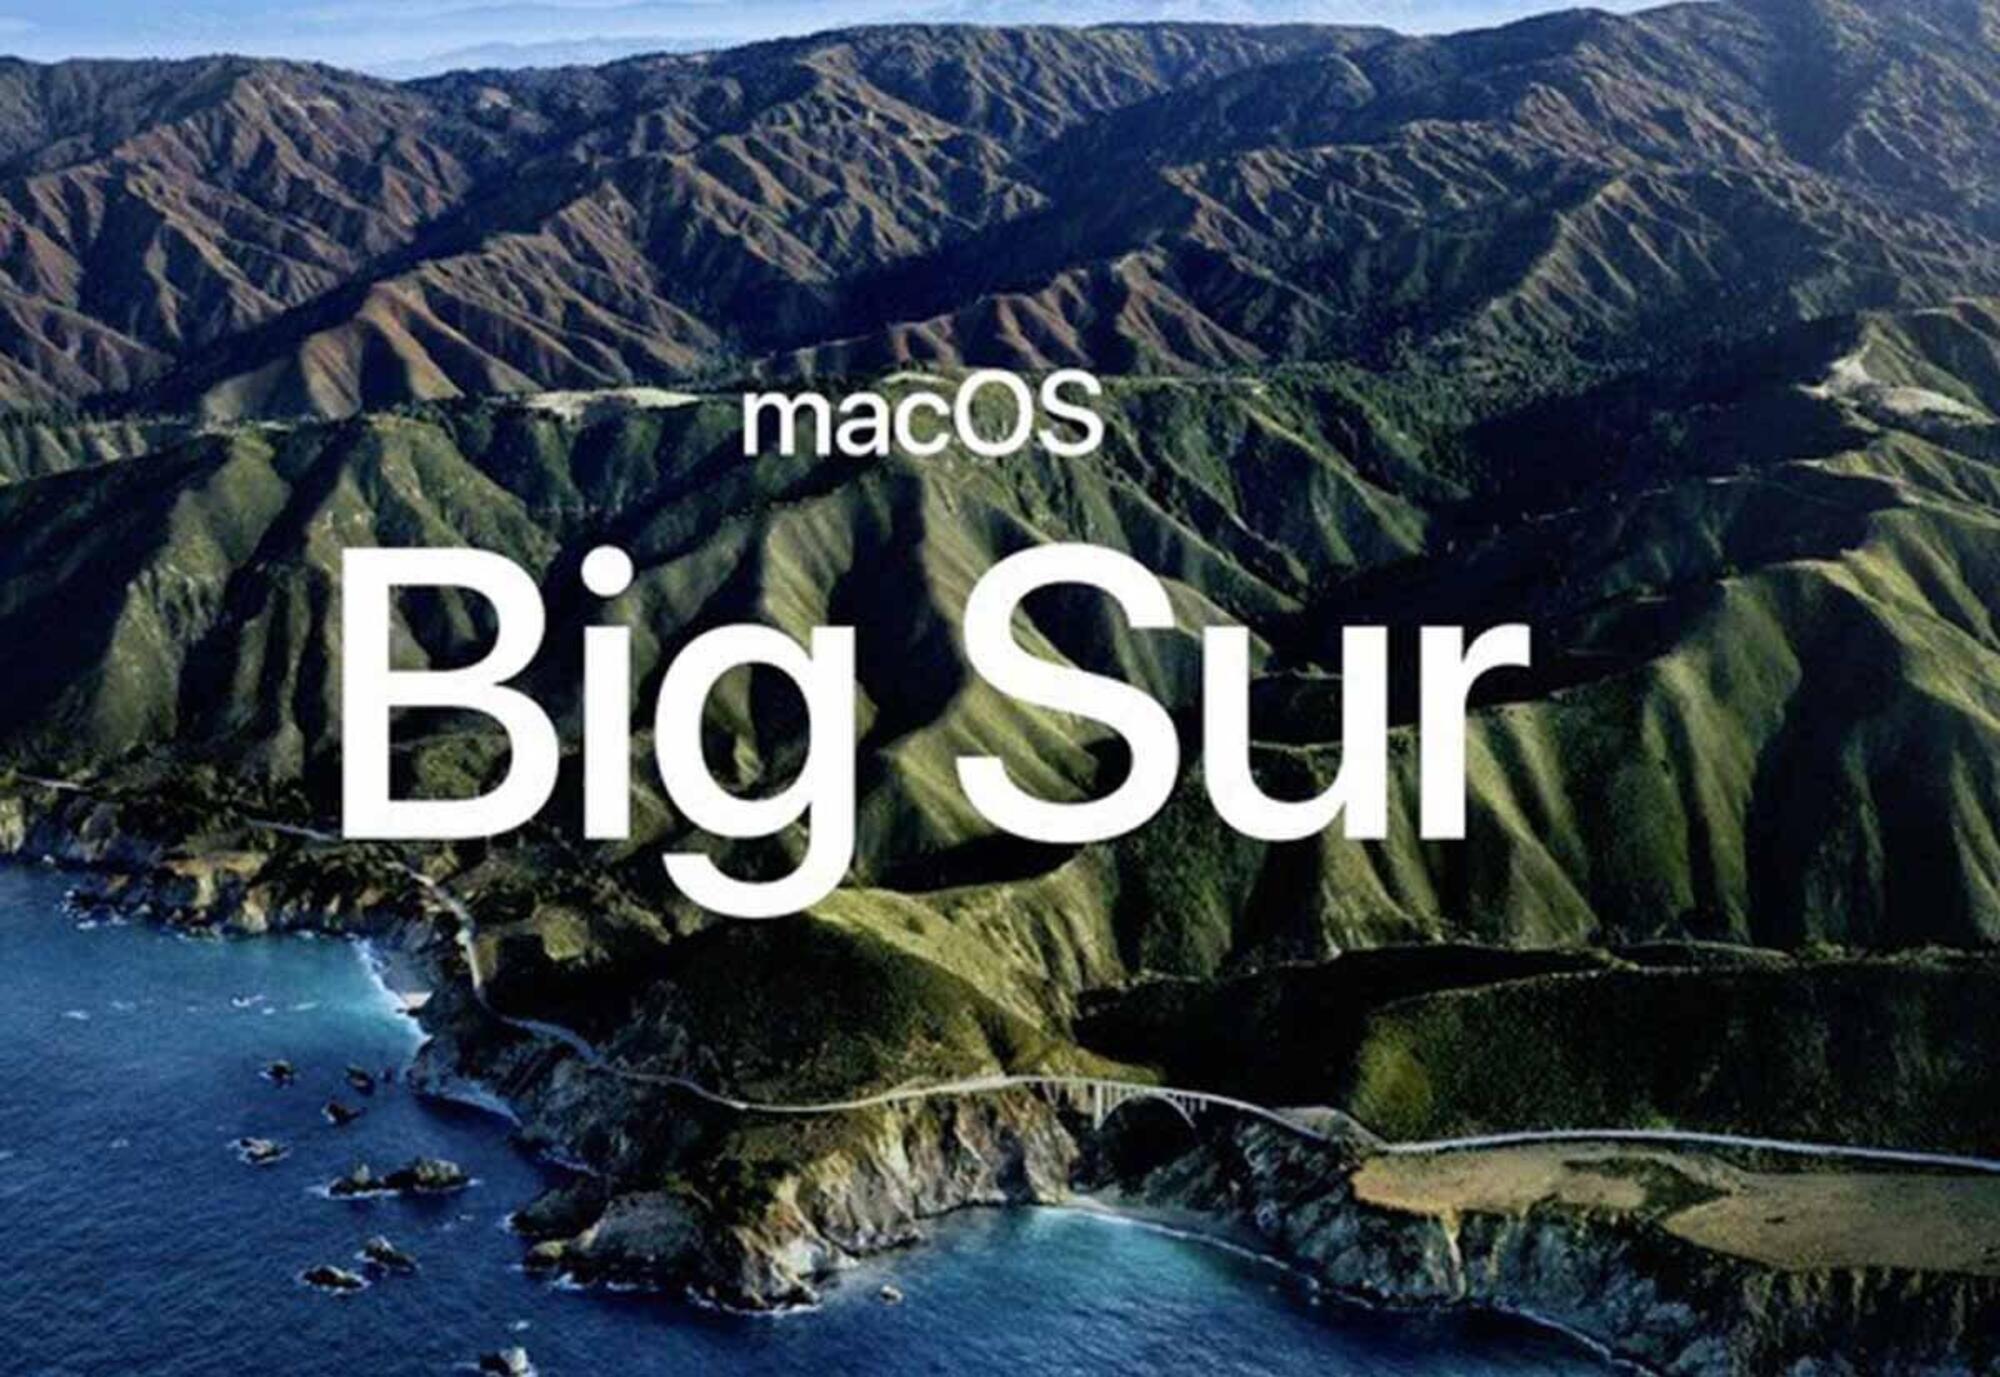 macOS Big Sur Apple Wwdc 2020